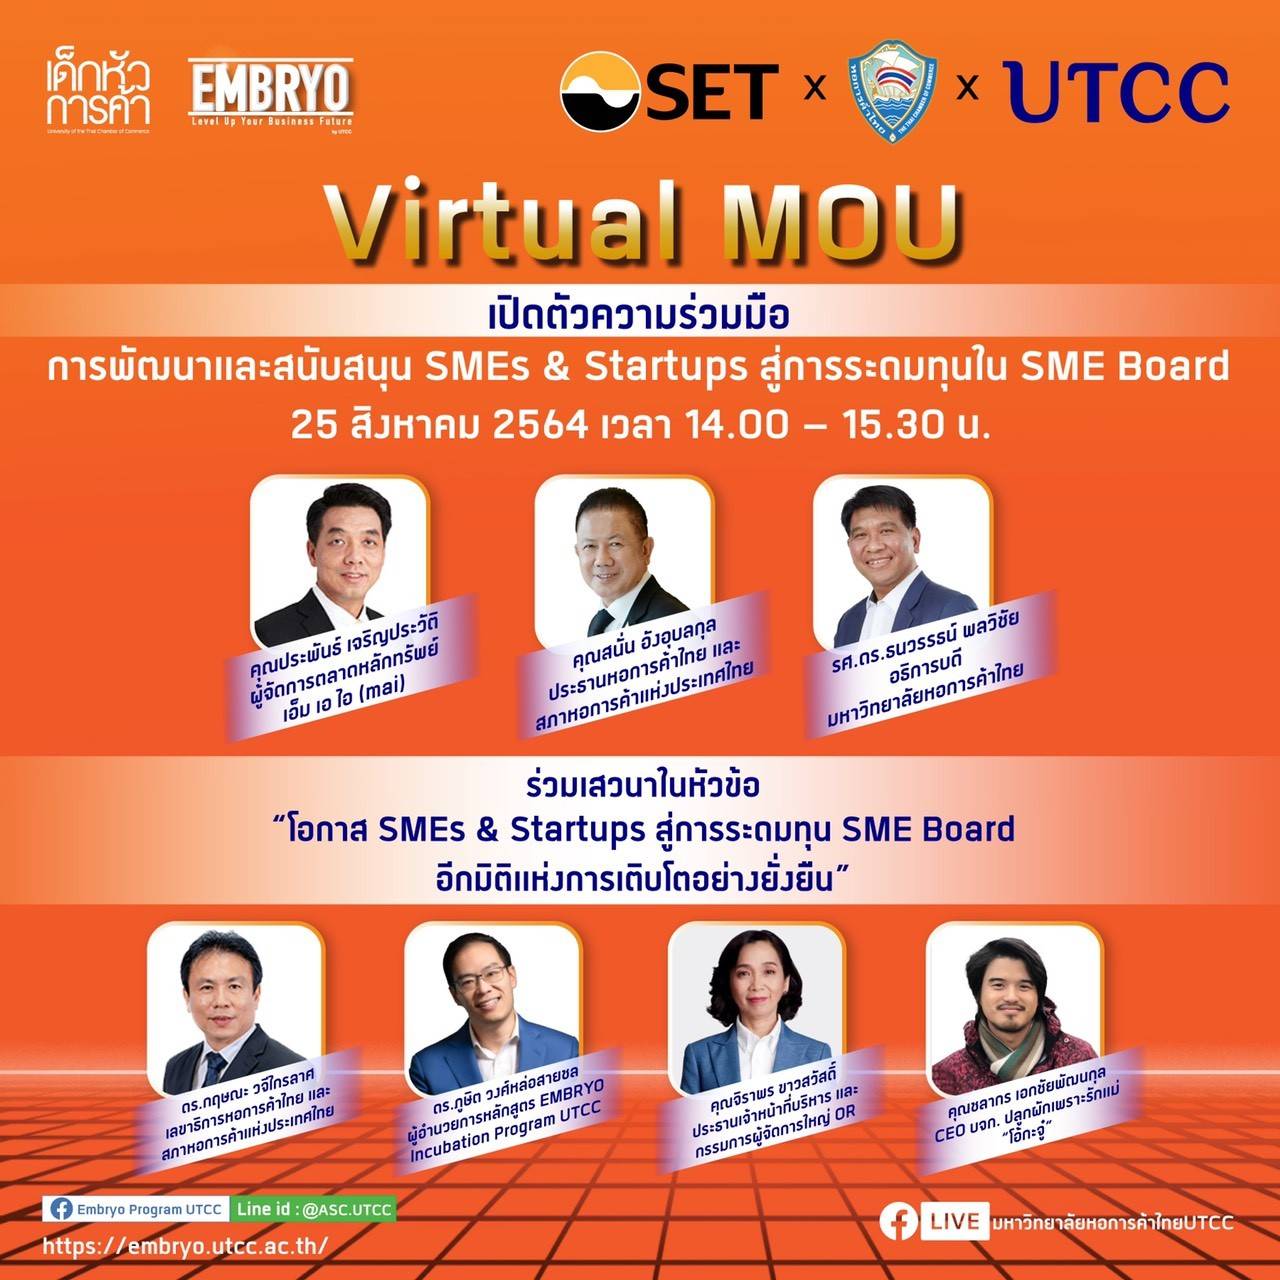 ขอเชิญรับชม Virtual MOU LIVE Streaming การเปิดตัวความร่วมมือ ระหว่าง ตลาดหลักทรัพย์แห่งประเทศไทย หอการค้าไทย และมหาวิทยาลัยหอการค้าไทย ภายใต้หัวข้อ “การพัฒนาและสนับสนุน SMEs & Startups สู่การระดมทุนใน SME Board”